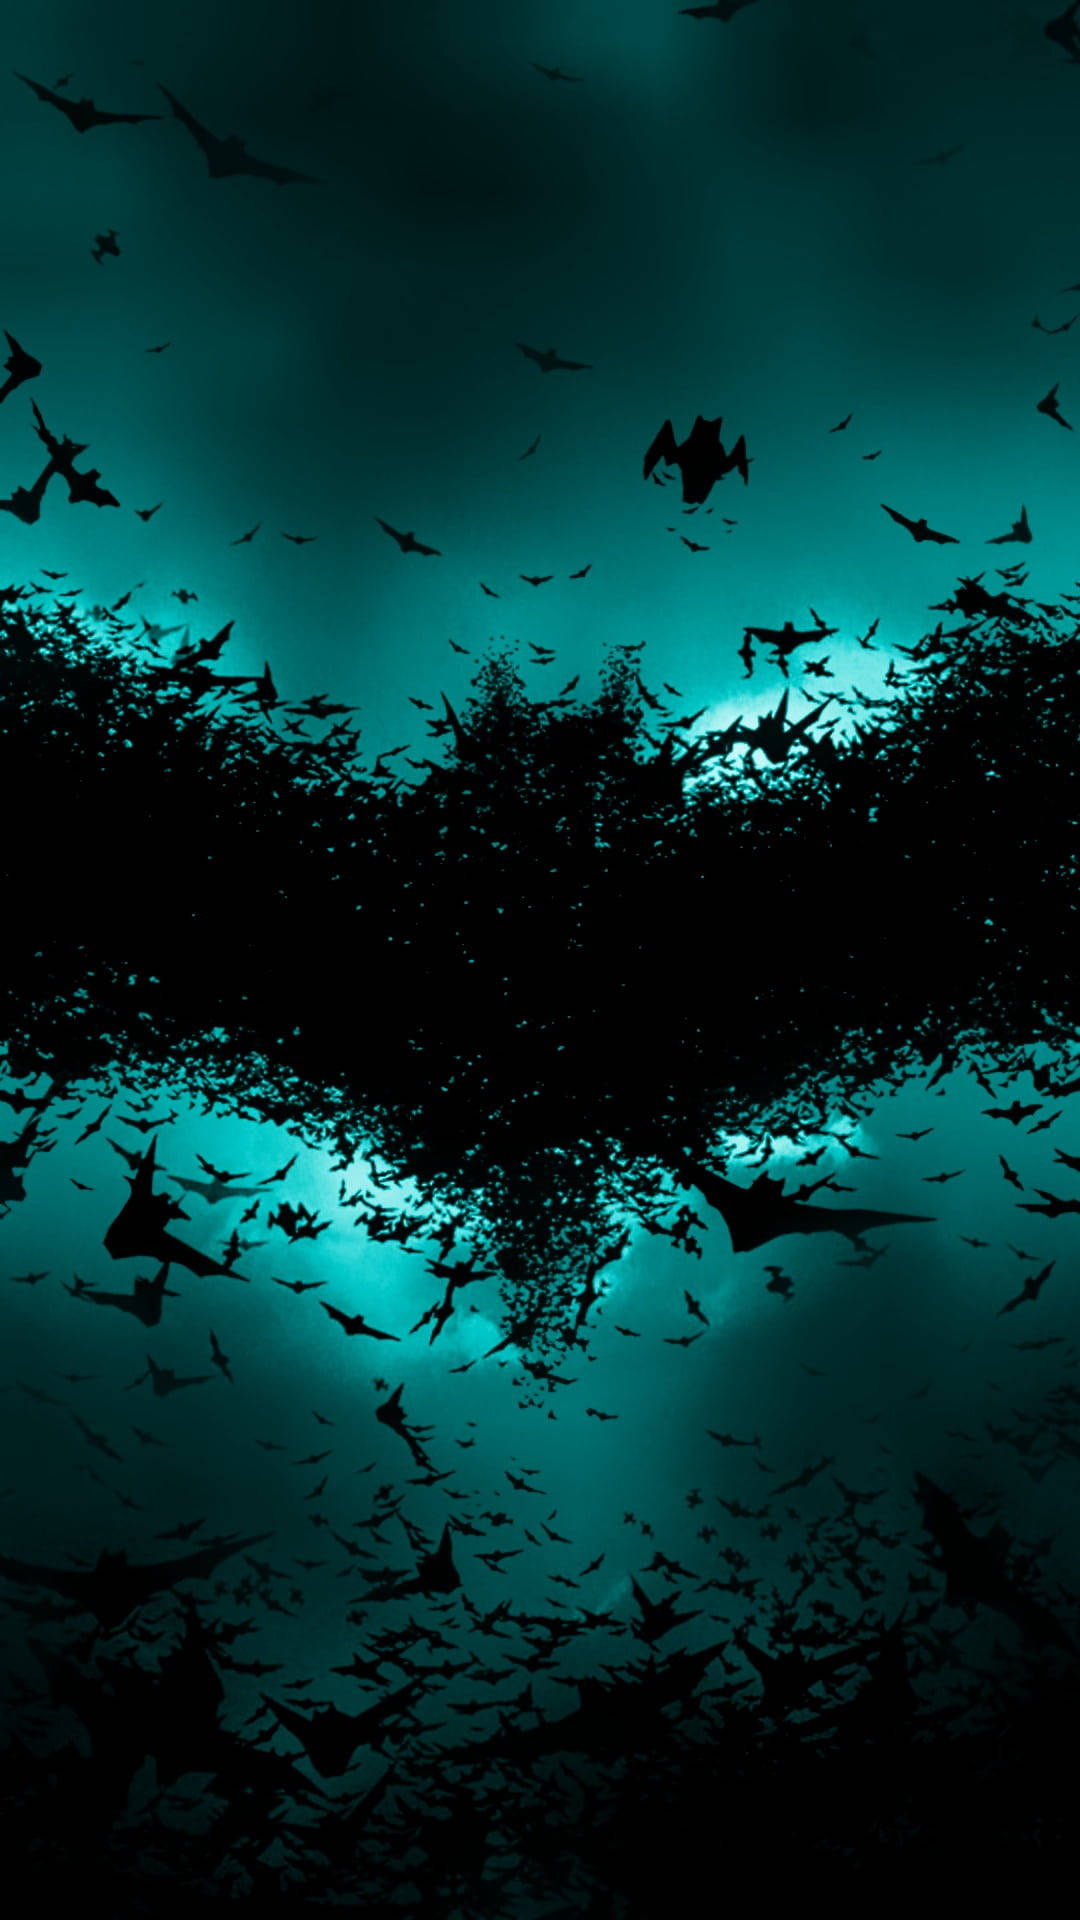 Bats Forming The Batman Logo iPhone Wallpaper